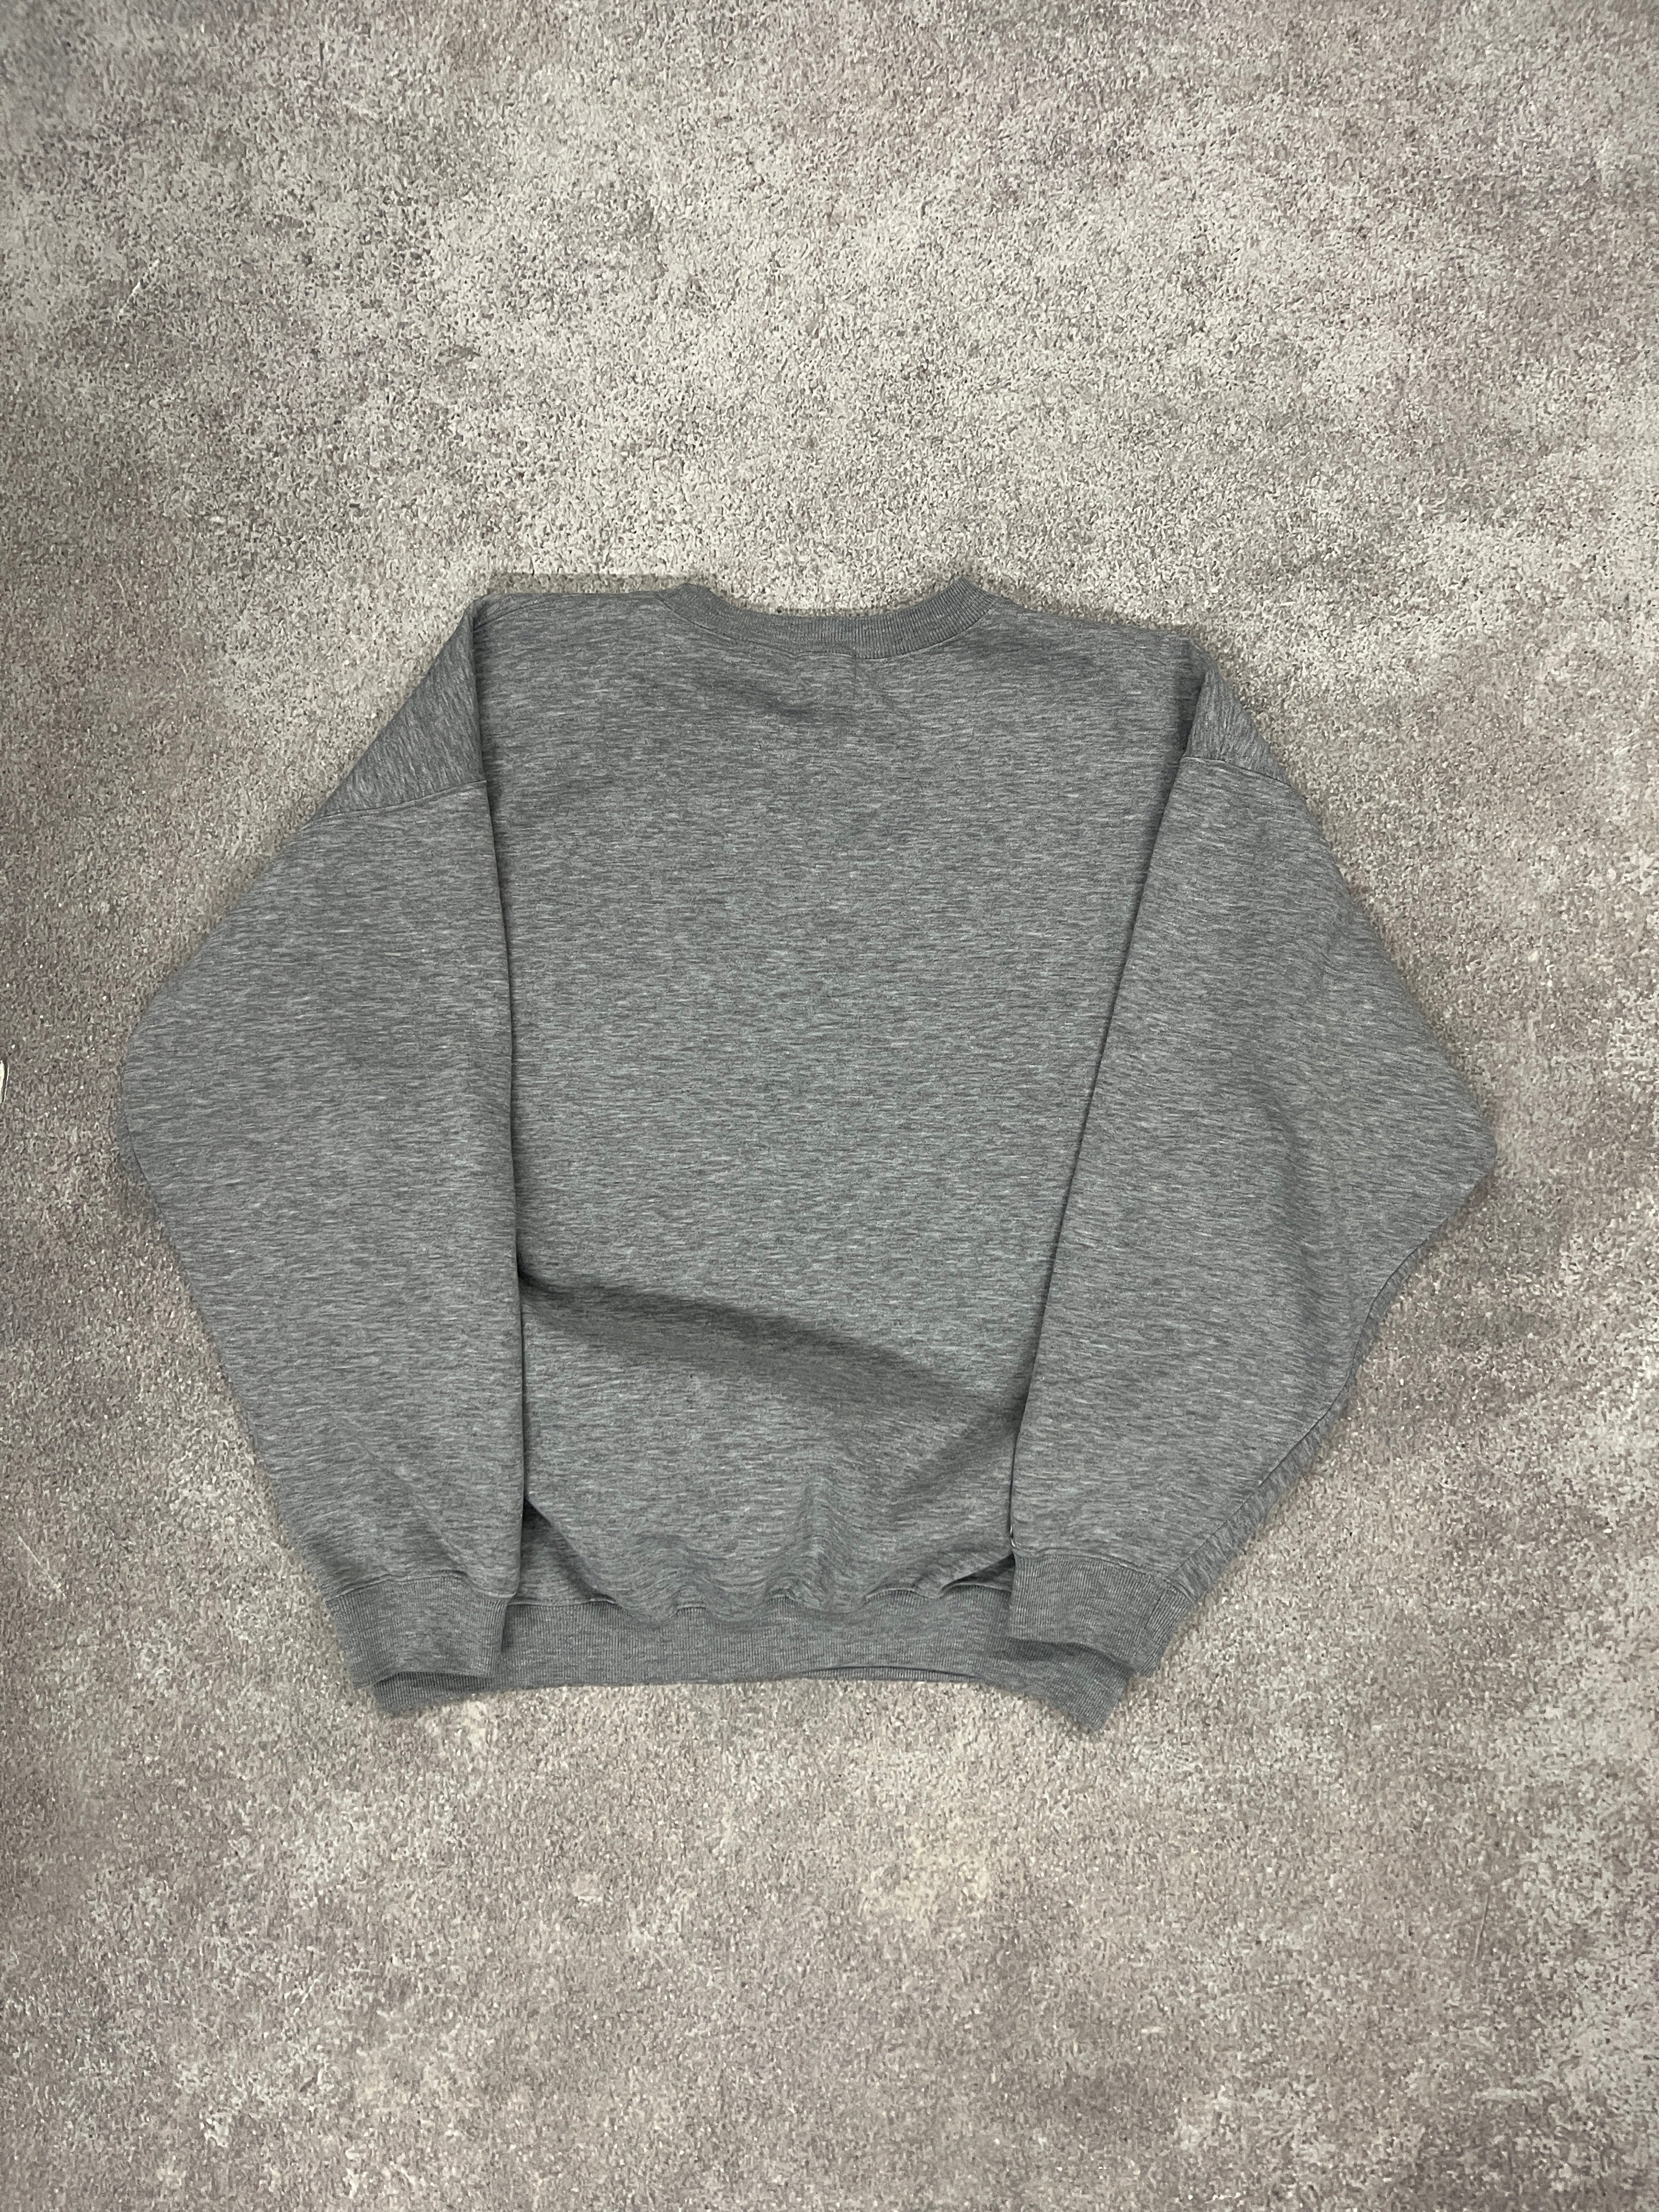 Vintage GAP Blank Sweater Grey // Medium - RHAGHOUSE VINTAGE